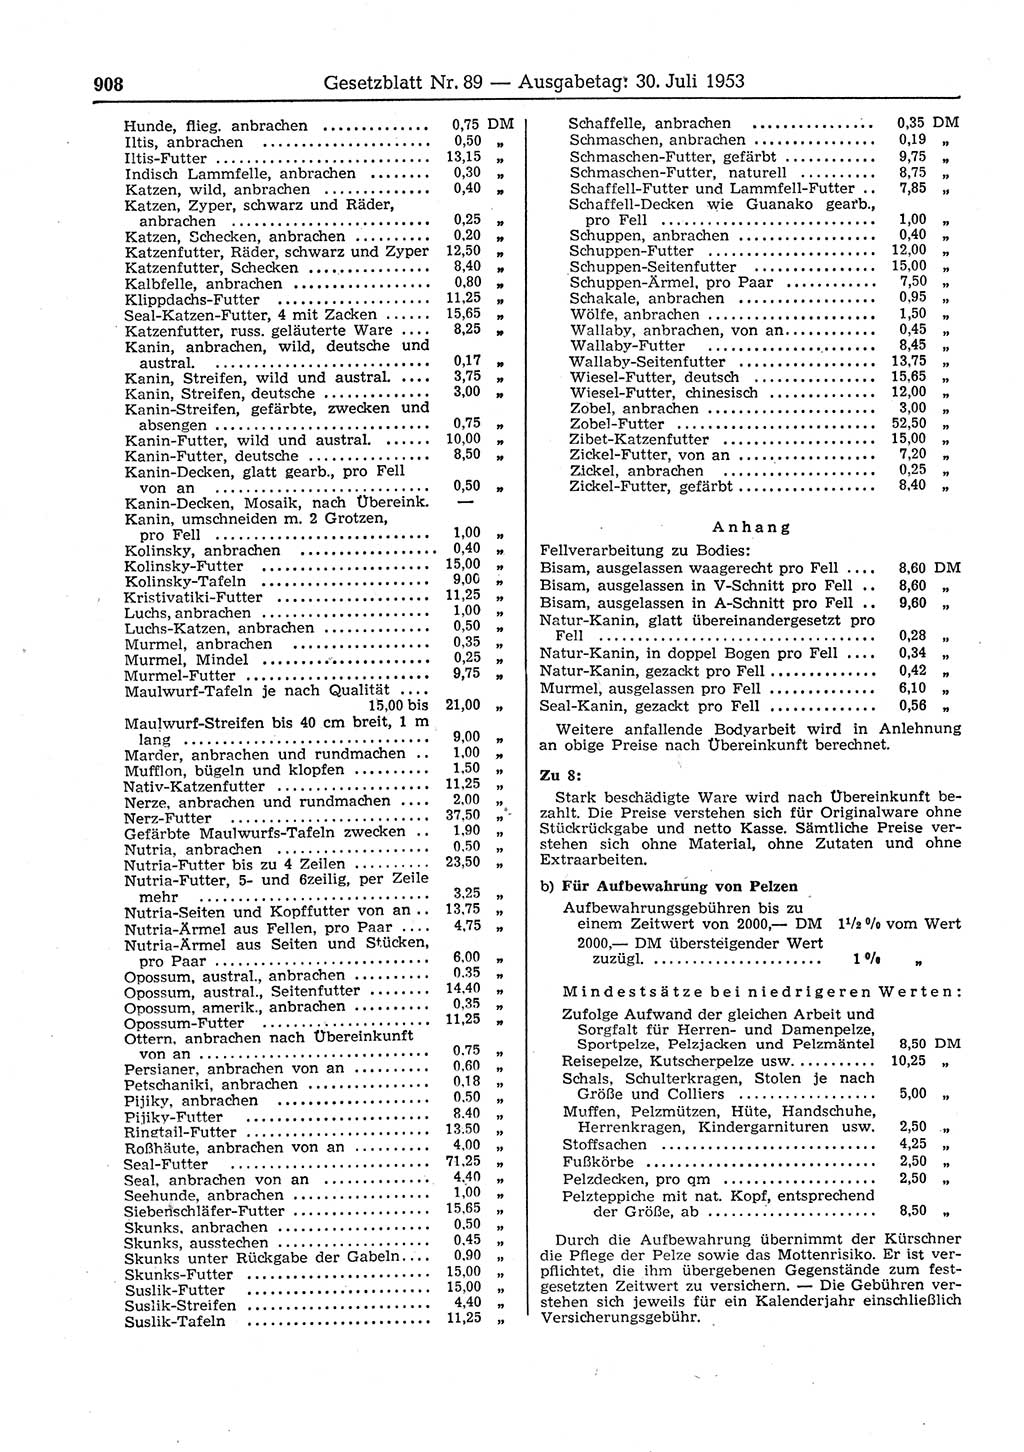 Gesetzblatt (GBl.) der Deutschen Demokratischen Republik (DDR) 1953, Seite 908 (GBl. DDR 1953, S. 908)